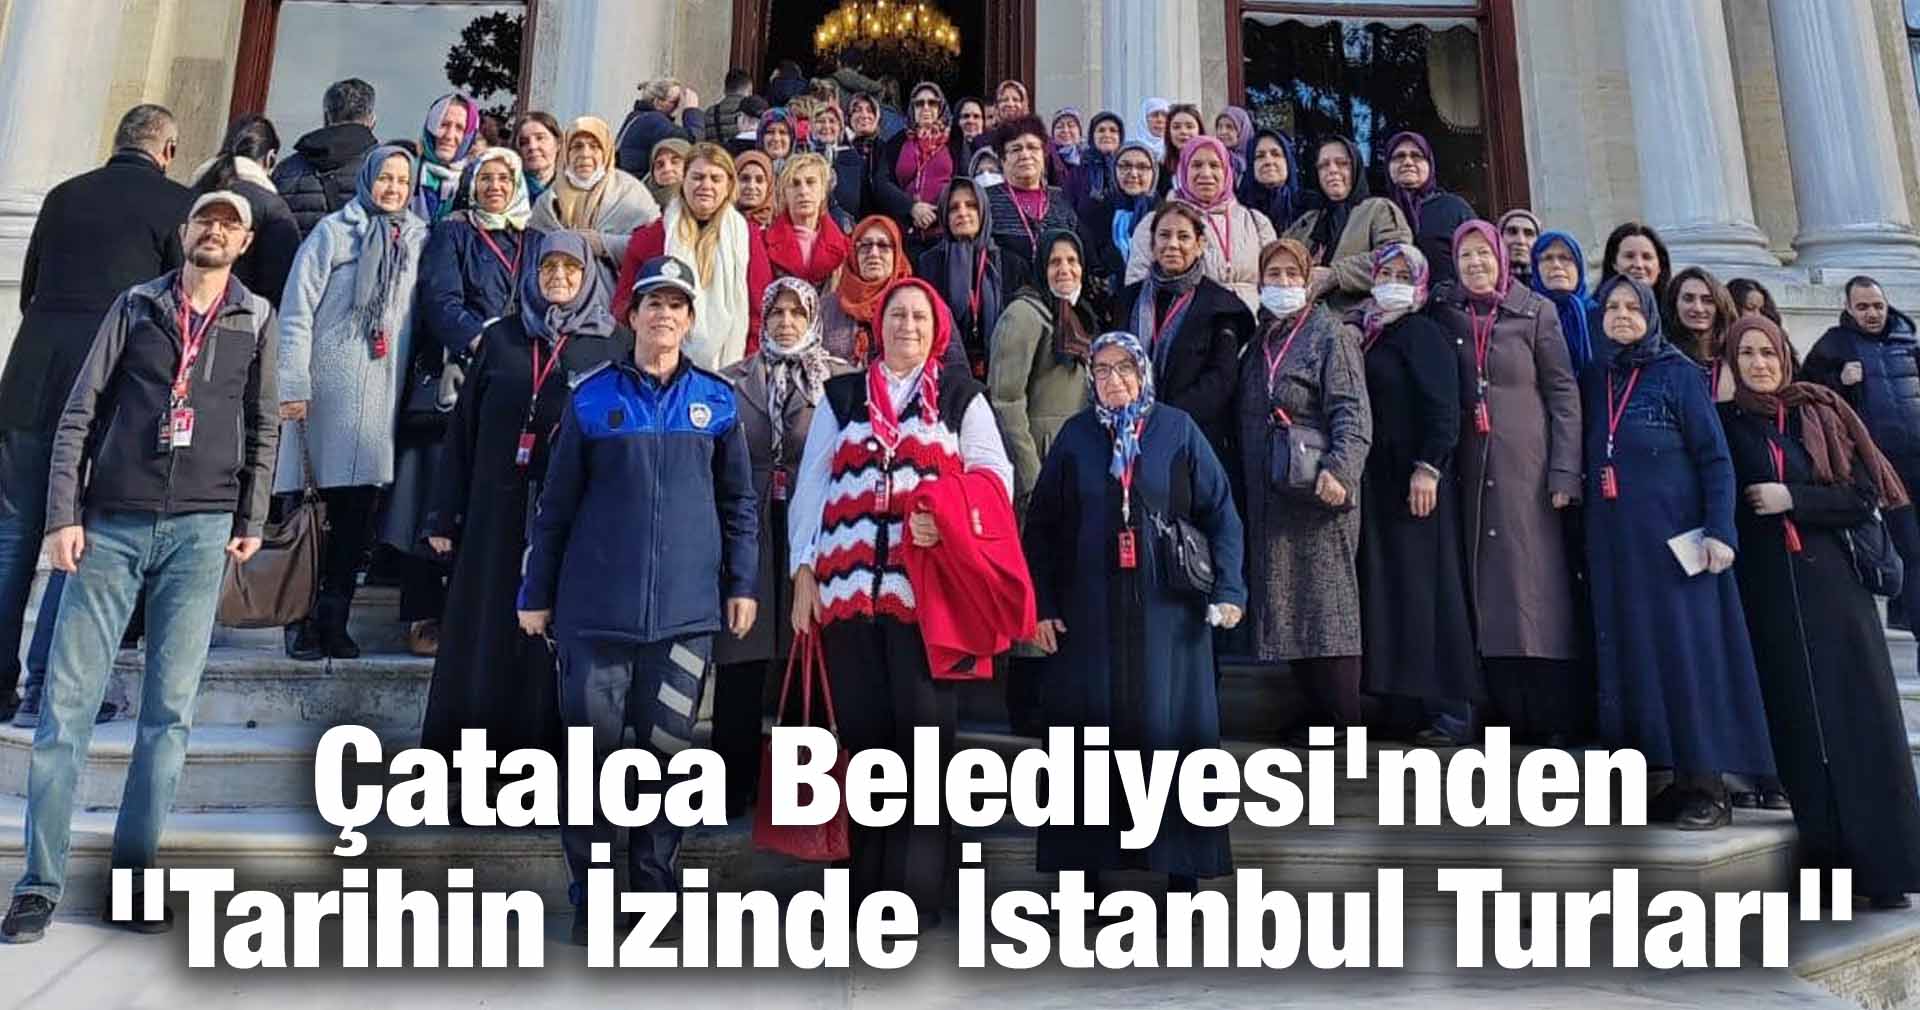 Çatalca Belediyesi’nden “Tarihin İzinde İstanbul Turları”